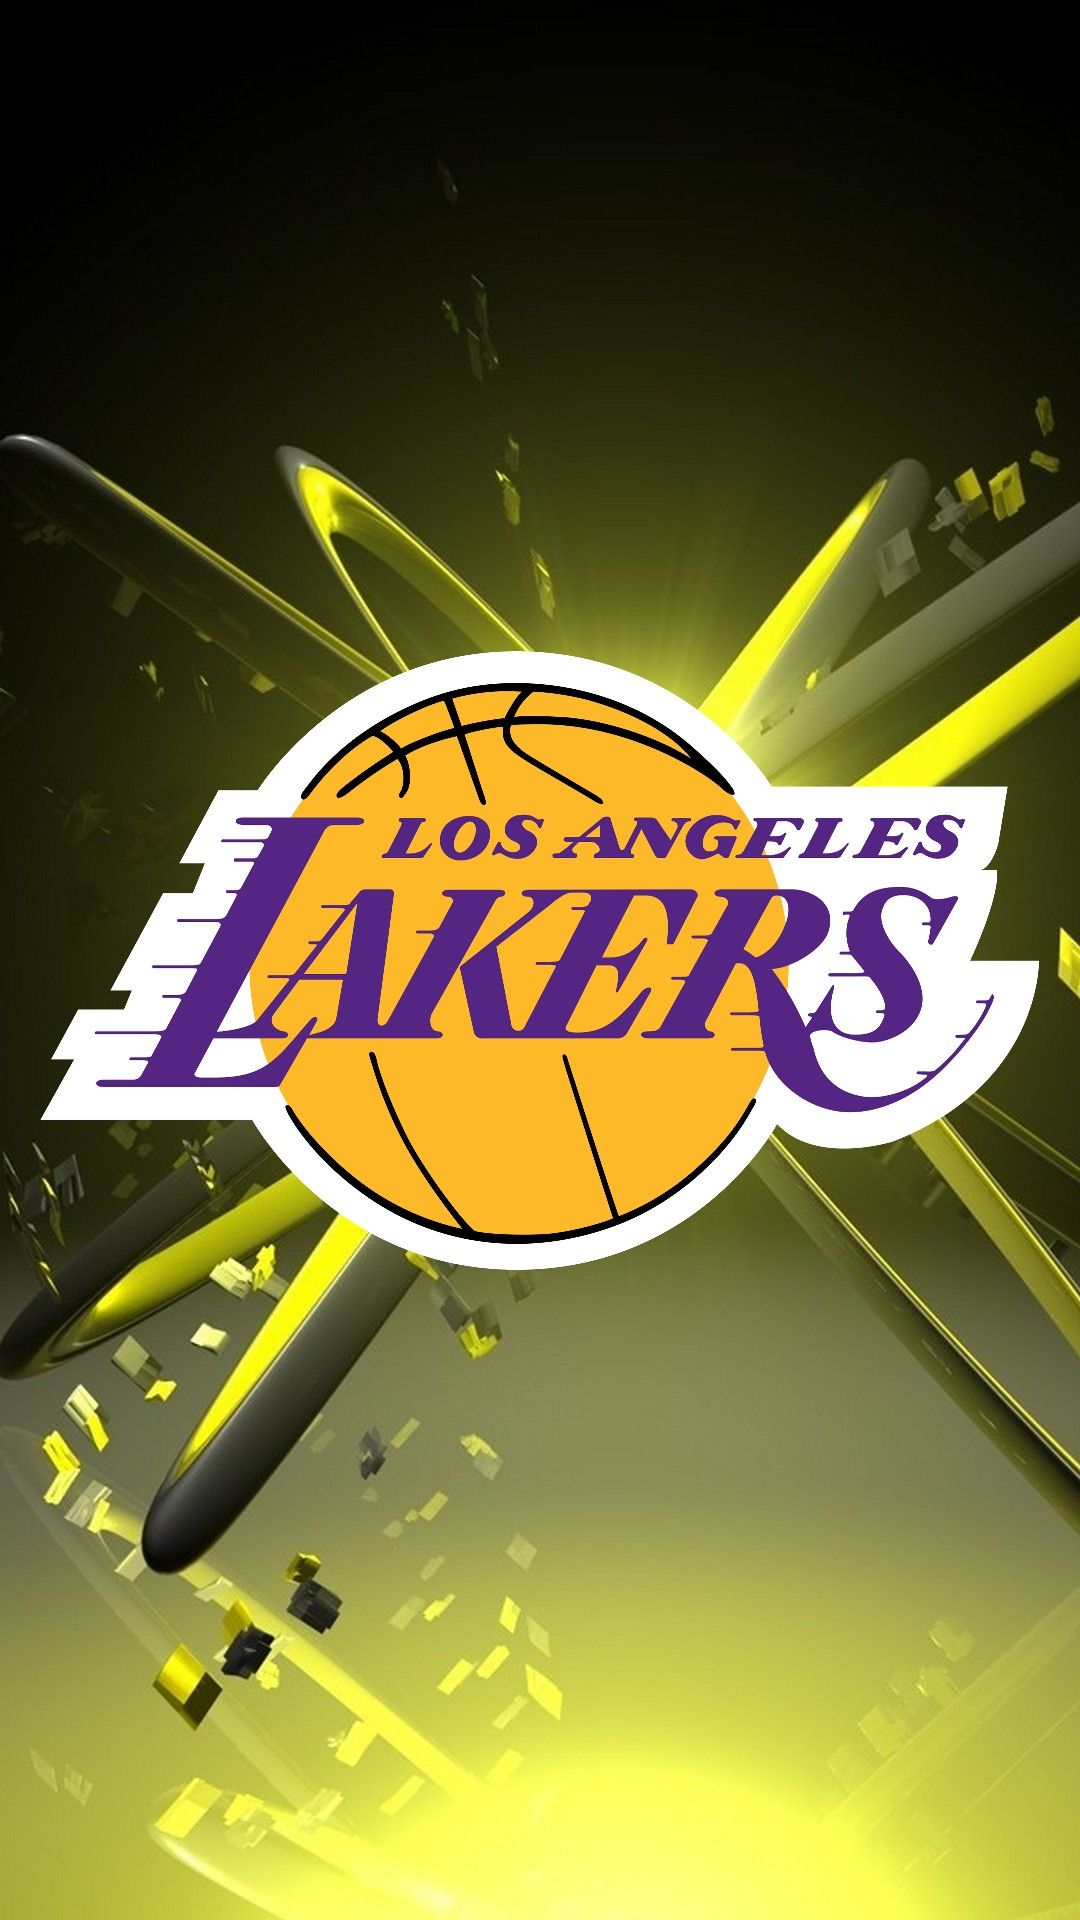 Free download LA Lakers iPhone 6 Plus Wallpaper 2020 NBA iPhone